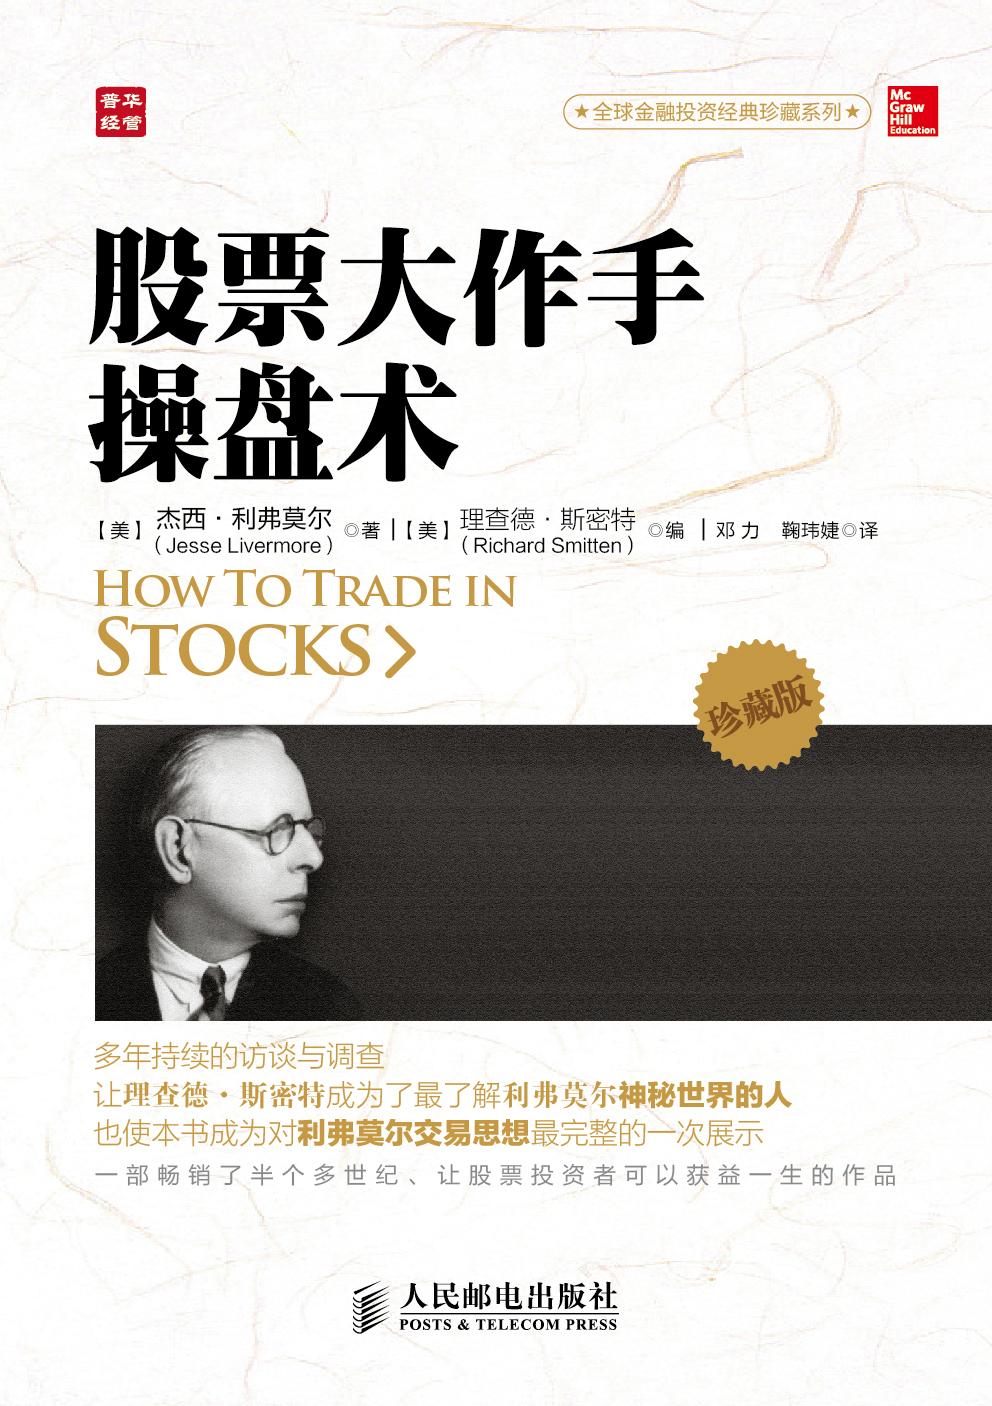 关于股票的经典书籍有哪些推荐?